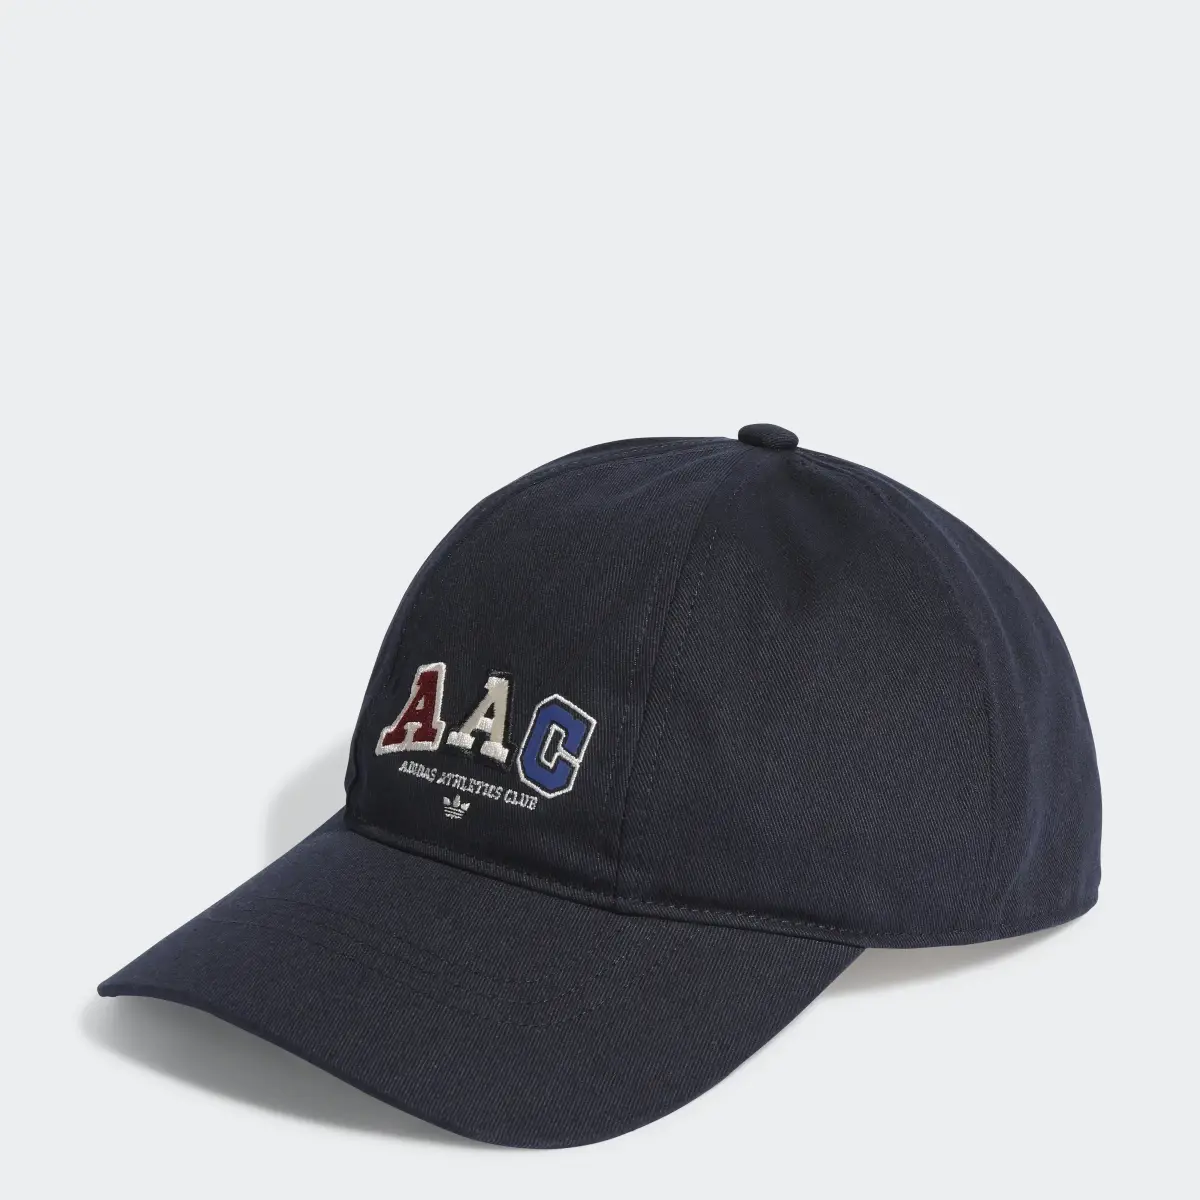 Adidas RIFTA Baseball Cap. 1